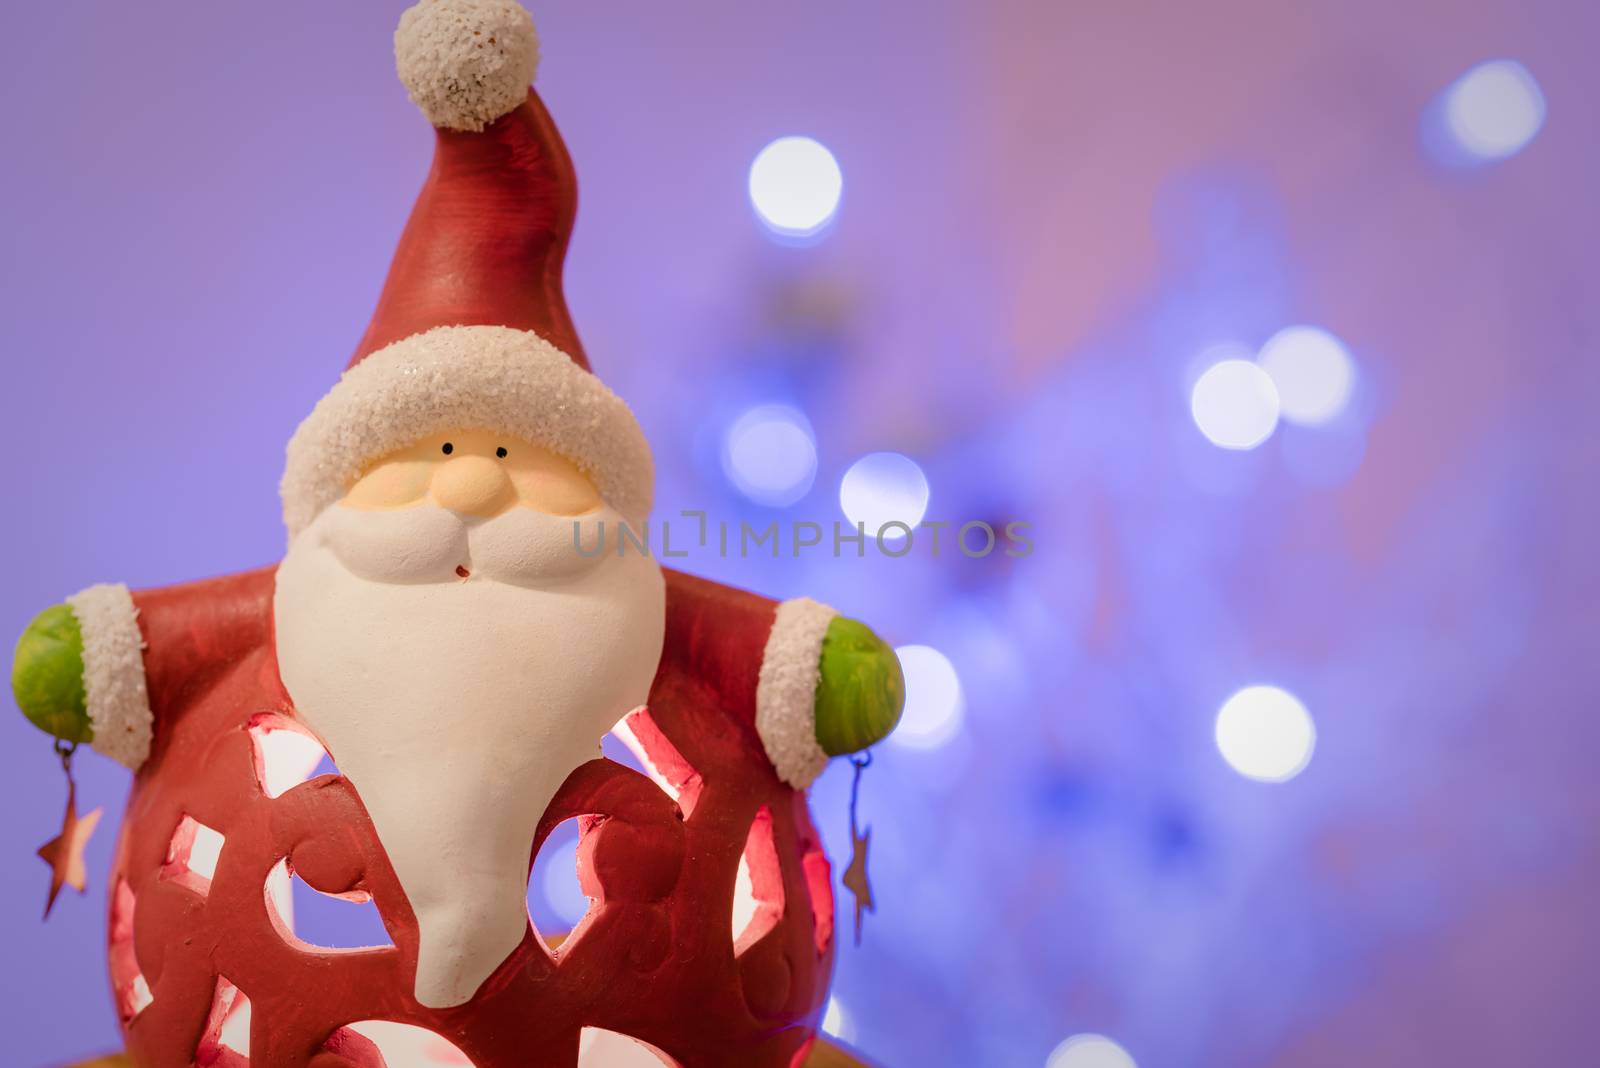 Christmas decoration, porcelain Santa Claus against blur background, focus on Santa.